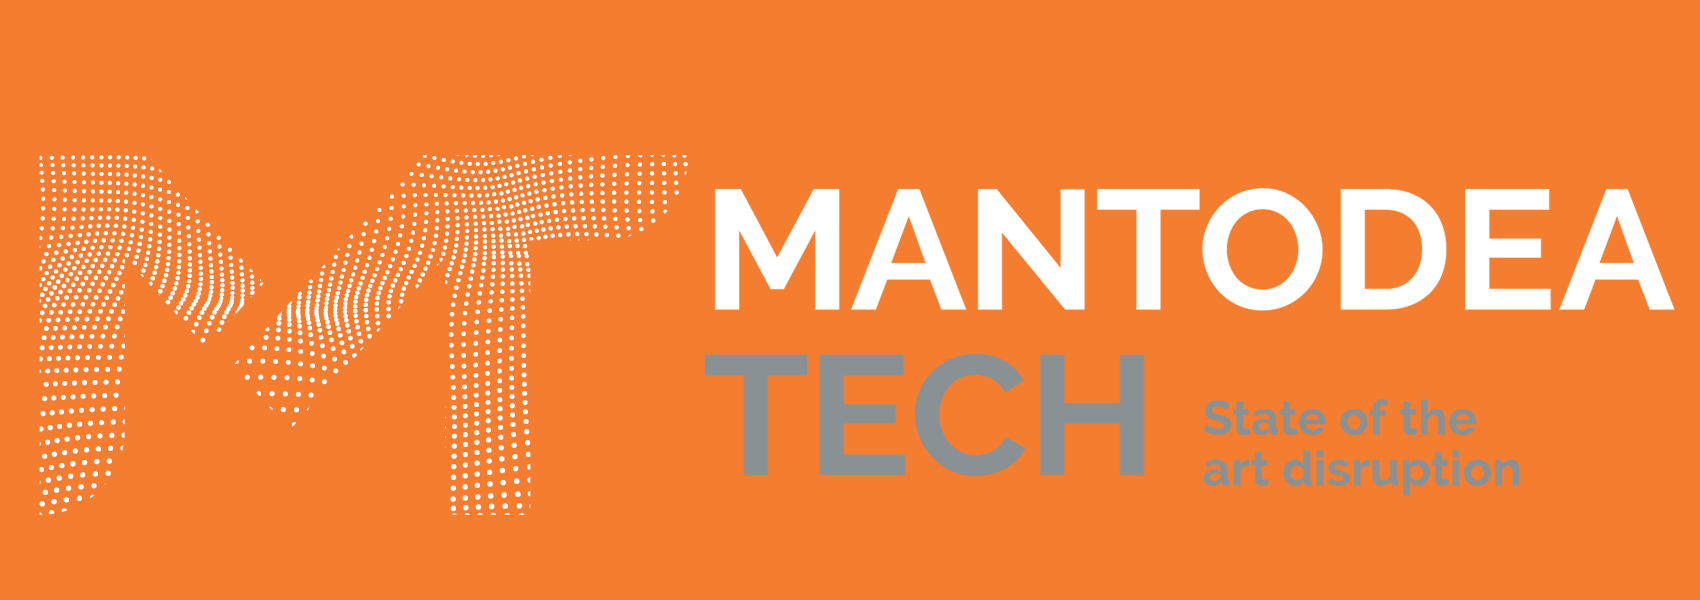 Mantodea Tech